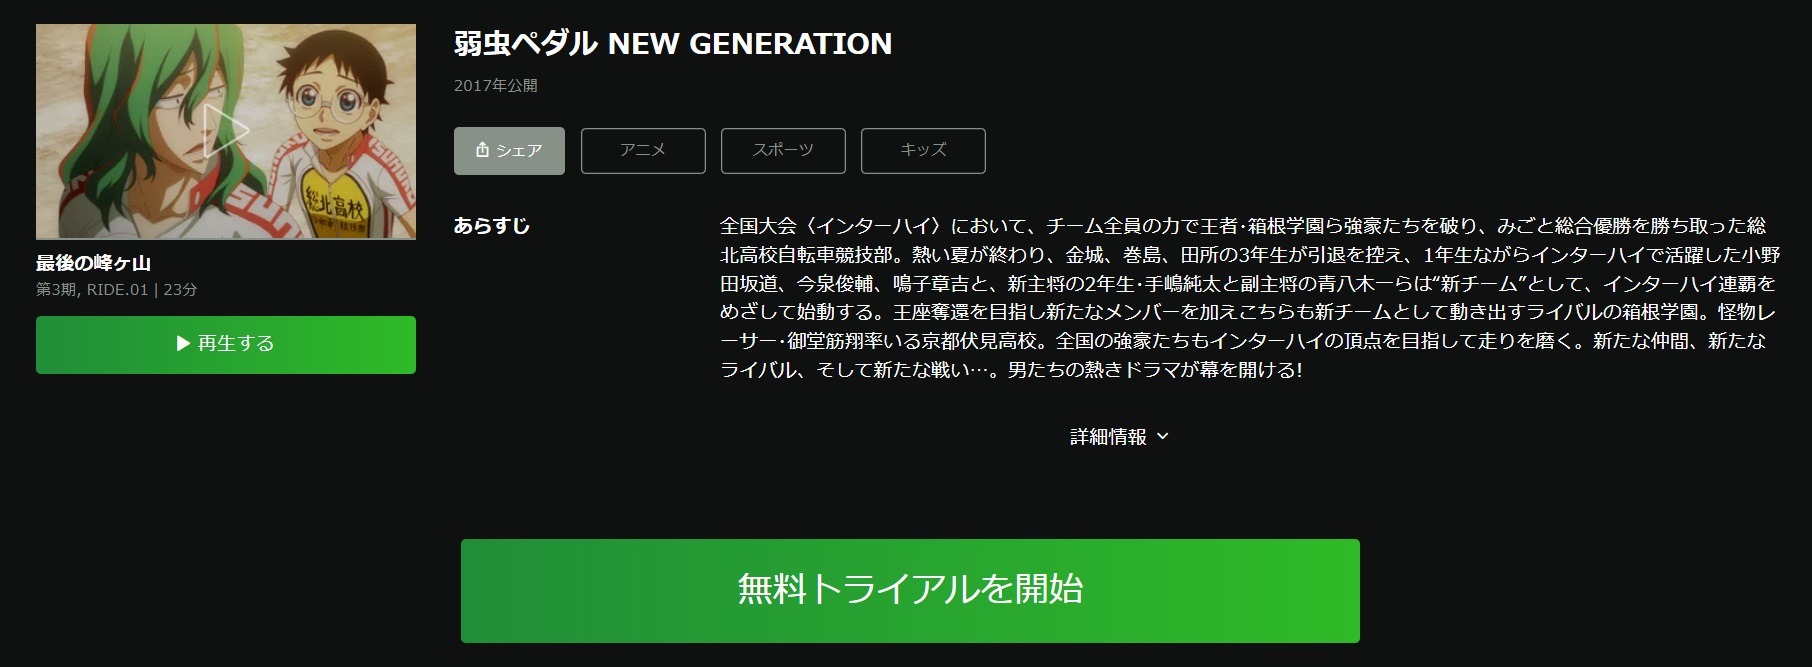 弱虫ペダル NEW GENERATION（3期）